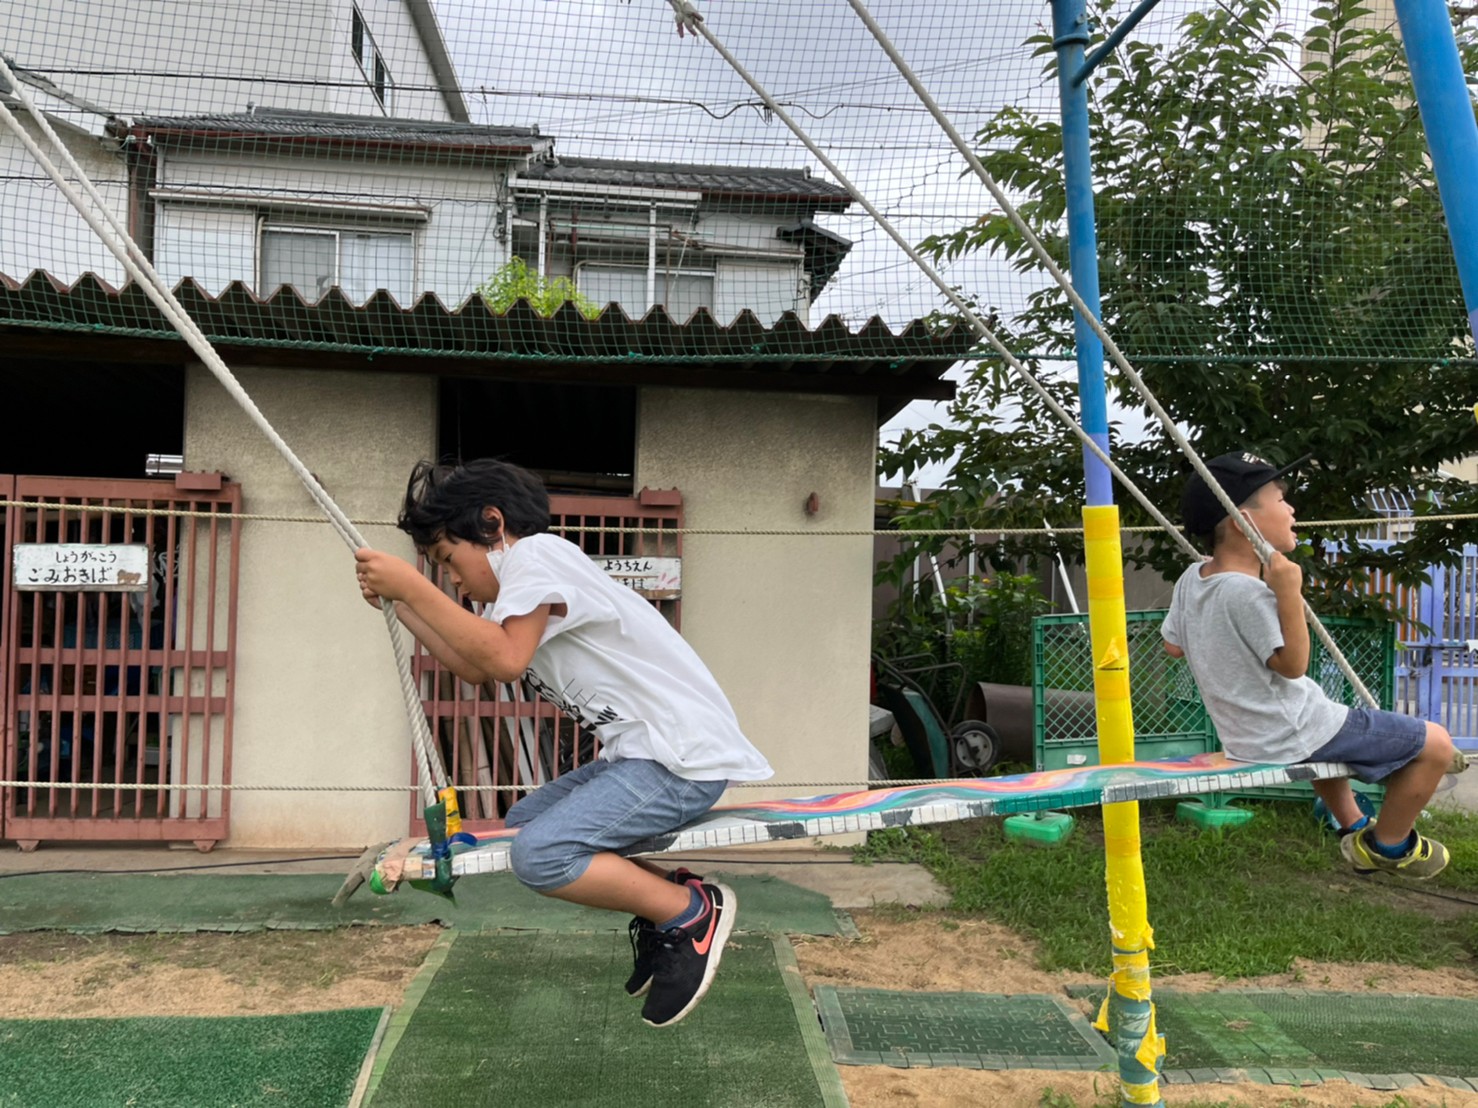 大阪の無料の遊び場ジャガピーパークで二人乗りブランコをする放課後等デイサービスオハナピースの小学生